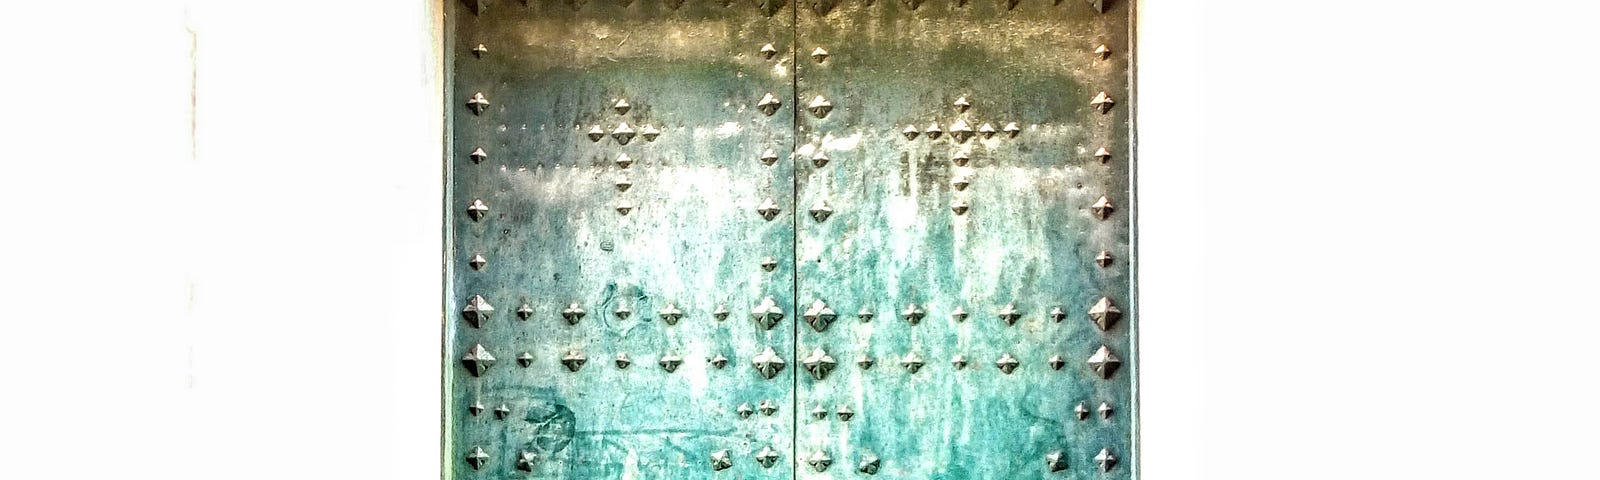 Metal door of a church. Some 250 years old. Open the door to understanding.